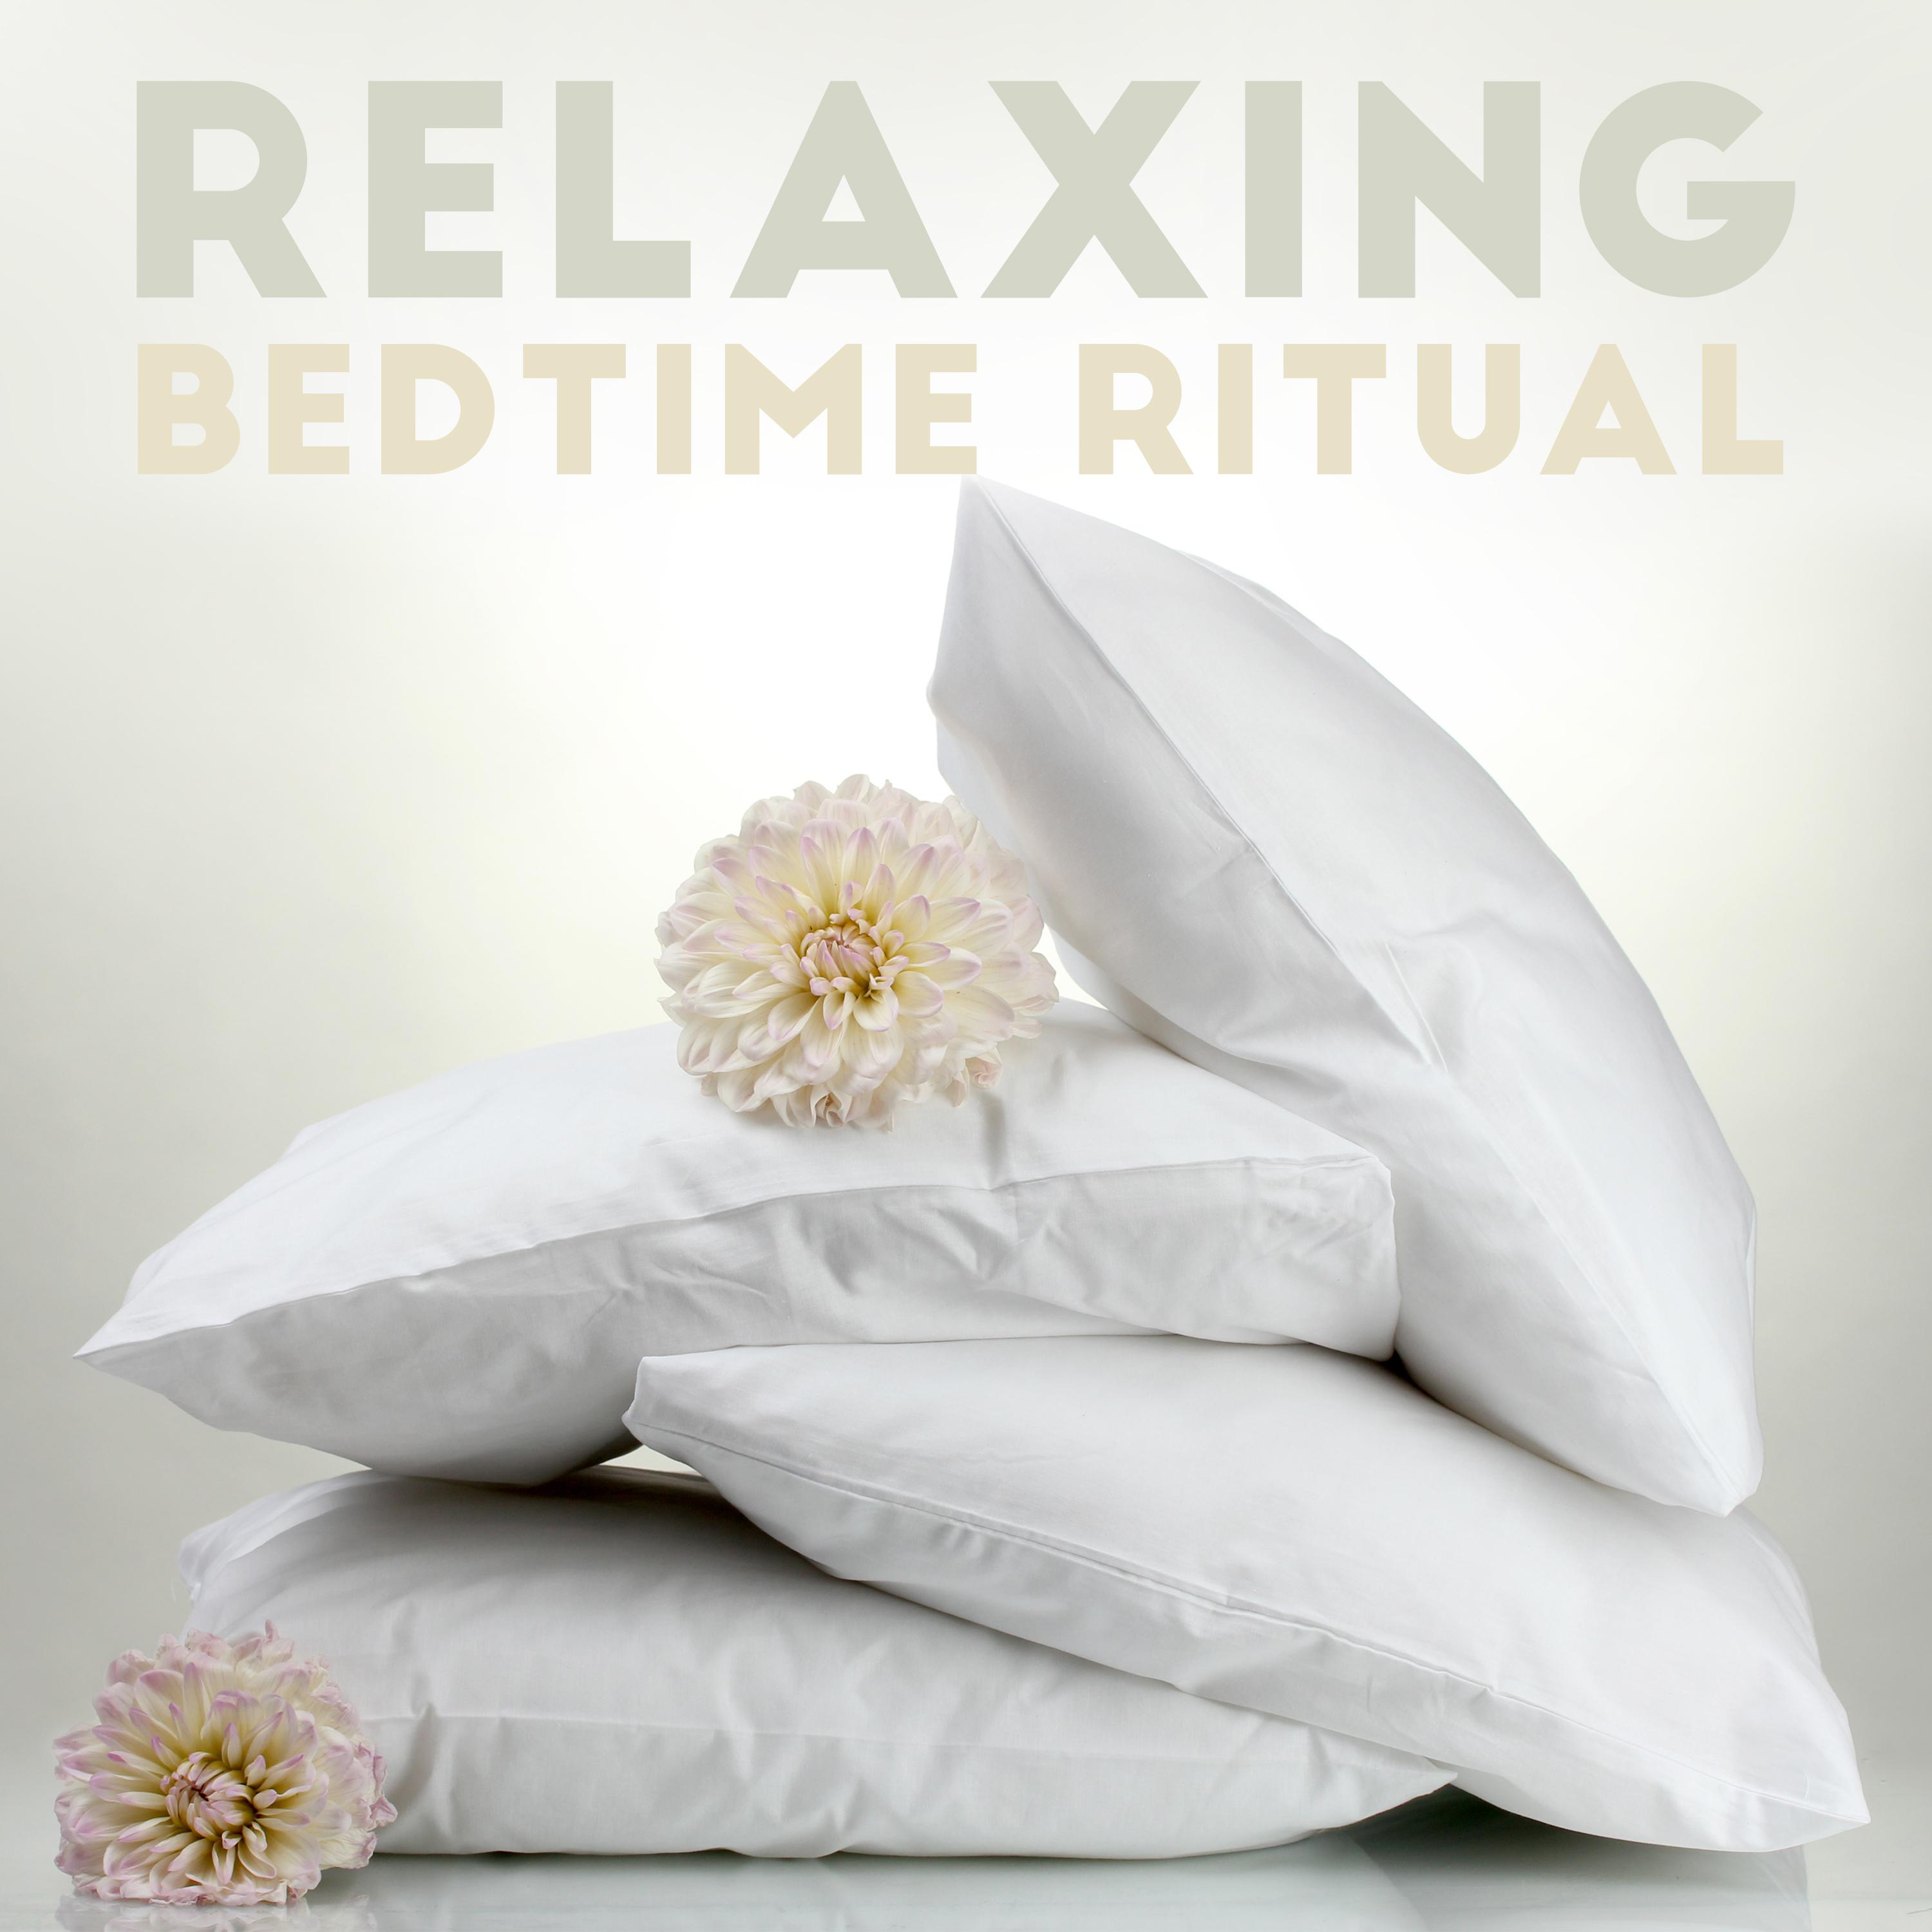 Relaxing Bedtime Ritual